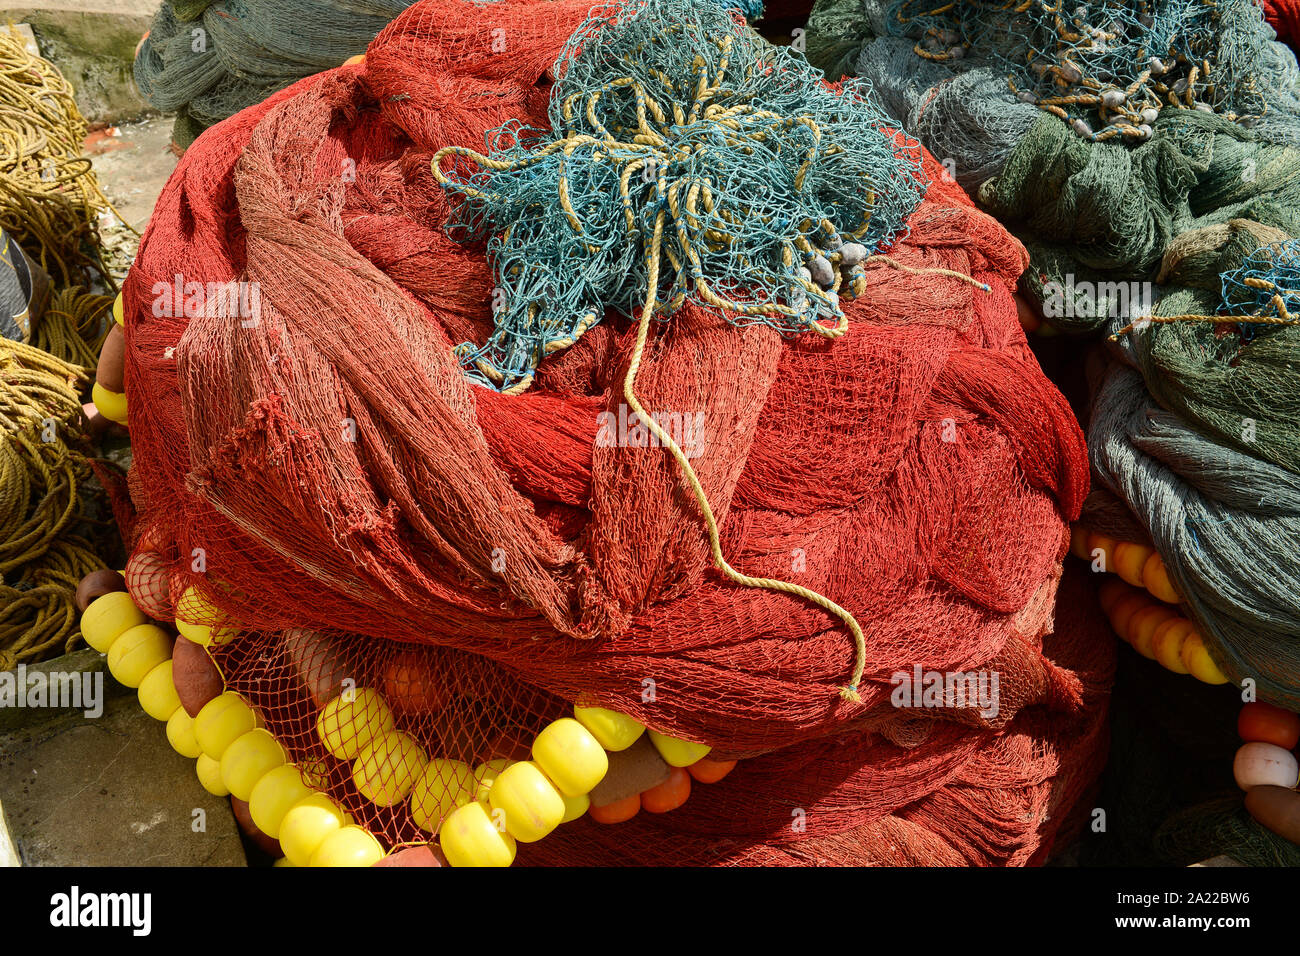 INDIA, Karnataka, Mangaluru, ex nome Mangalore, peschereccio nel porto di pesca durante il monsone, pesca in plastica le reti da traino e le funi che sono una fonte importante di inquinamento in plastica degli oceani e pericolose per gli animali del mare Foto Stock